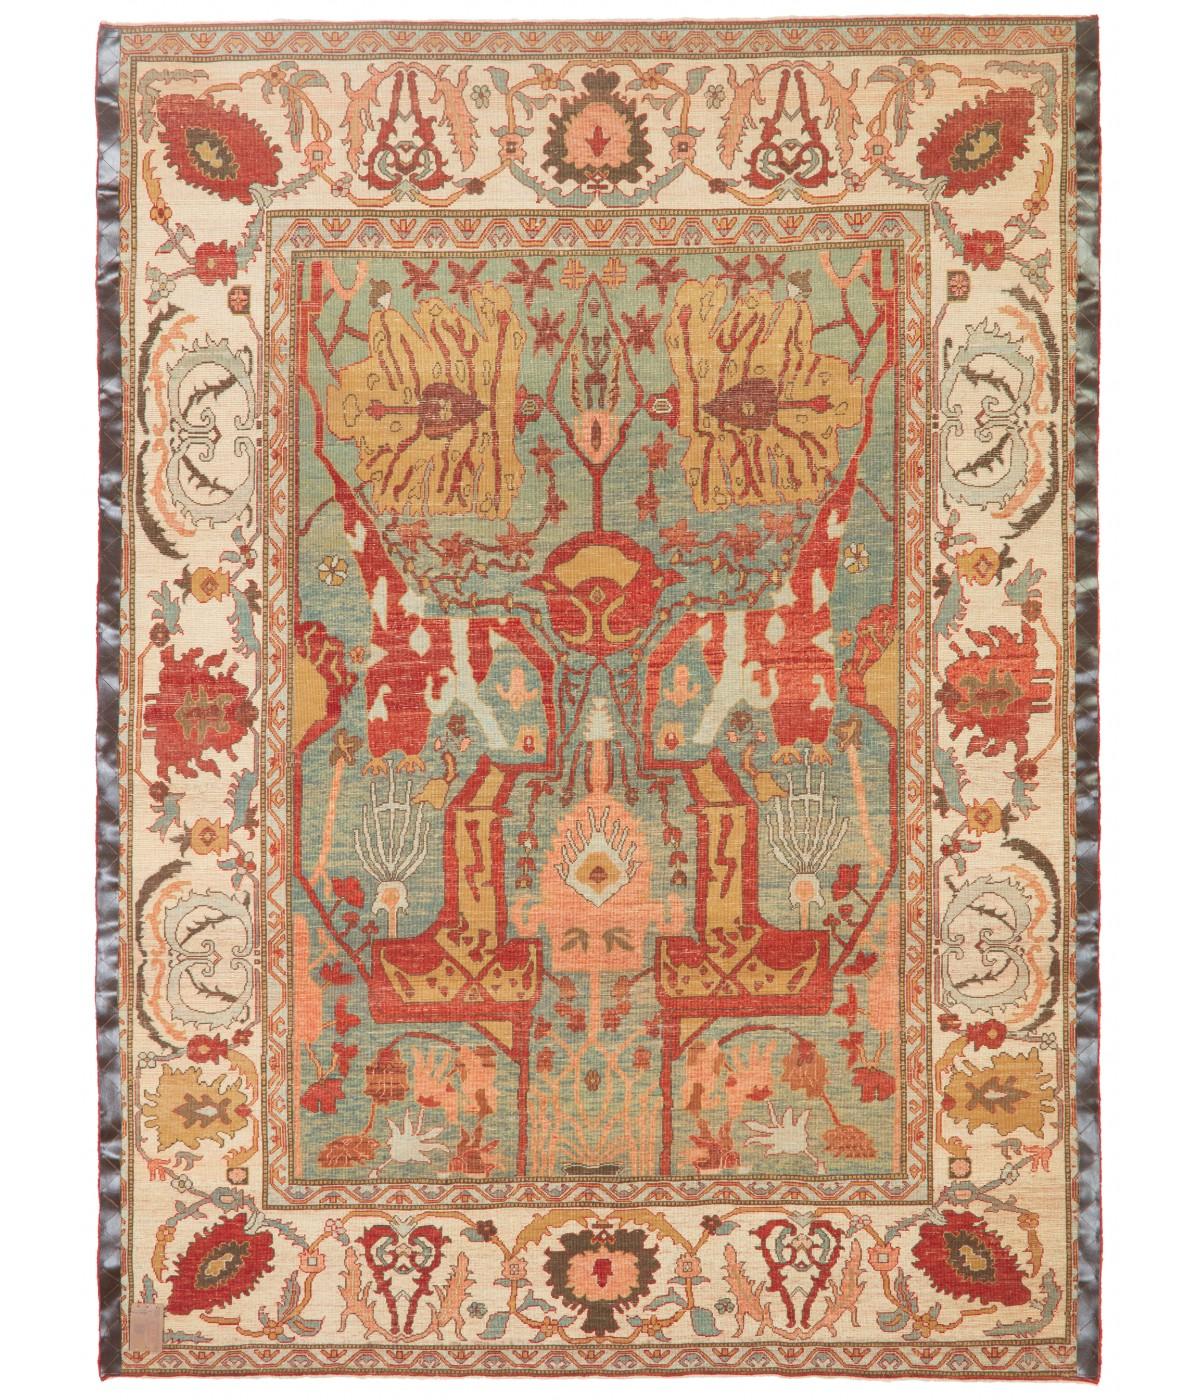 Die Quelle des Teppichs stammt aus dem Buch Islamic Carpets, Joseph V. McMullan, Near Eastern Art Research Center Inc. 1965, New York, Nr. 22. Dies ist ein System von Teppichen mit Arabeskenmuster aus dem 19. Jahrhundert aus der Region Gerous